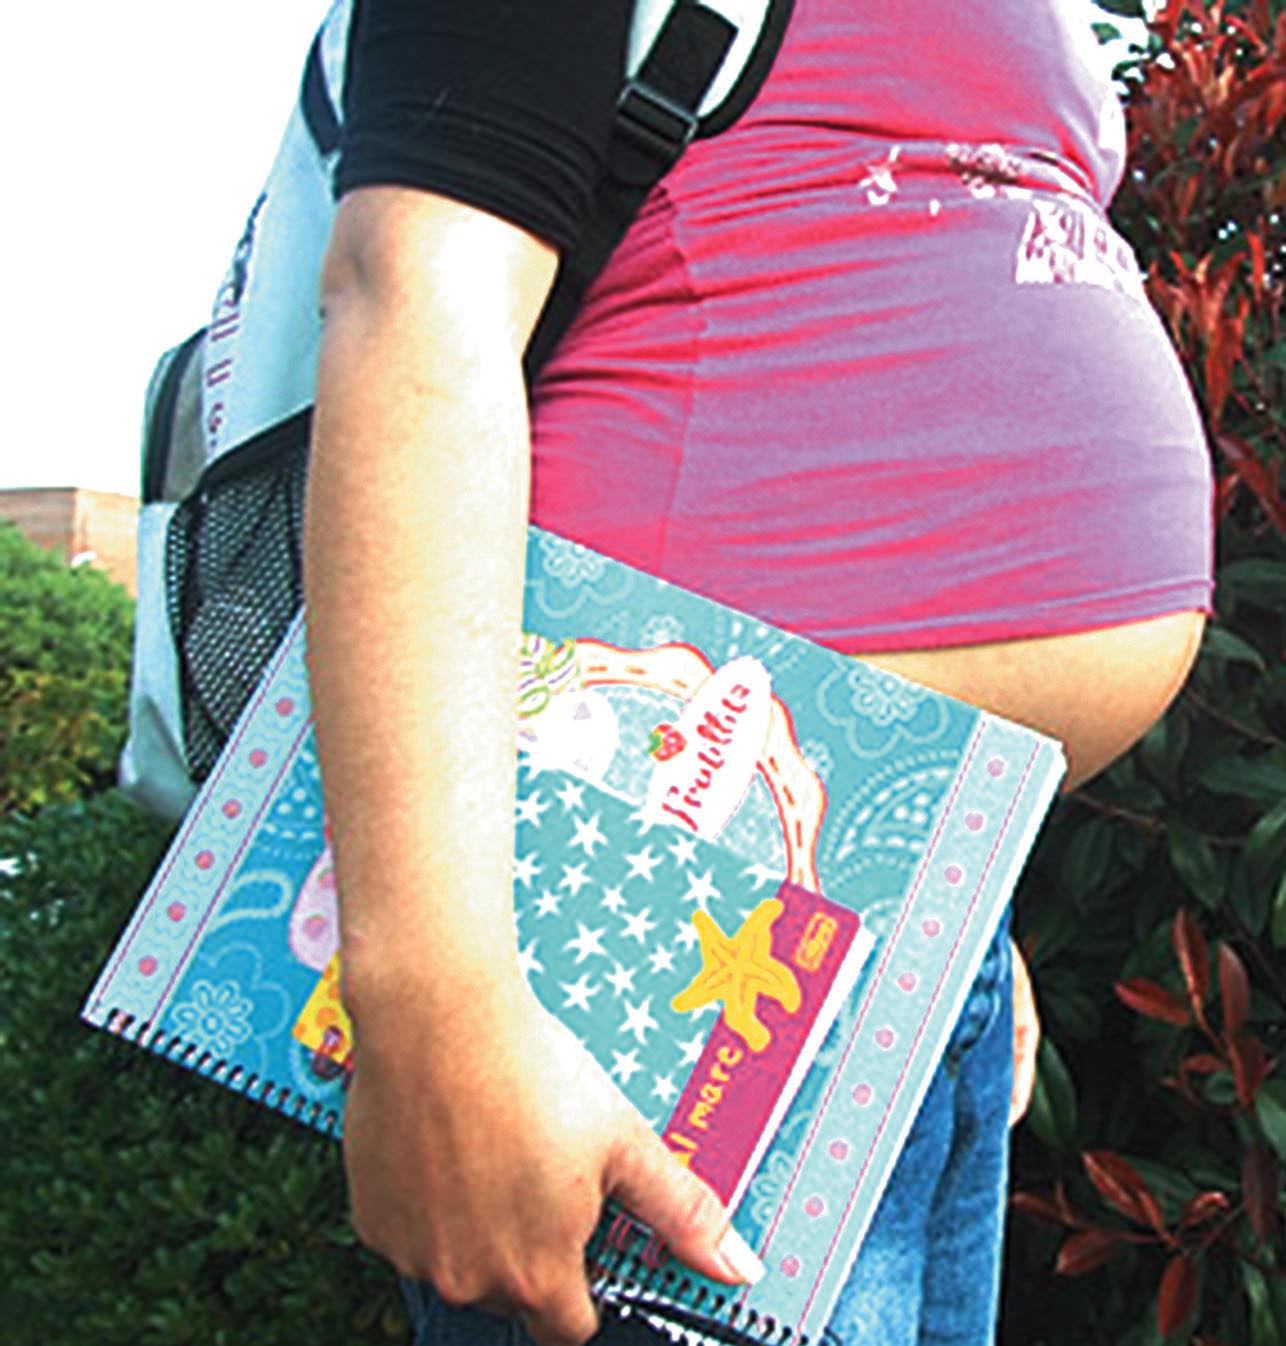 Inaugurado servicio de salud para embarazos en adolescentes de Anzoátegui